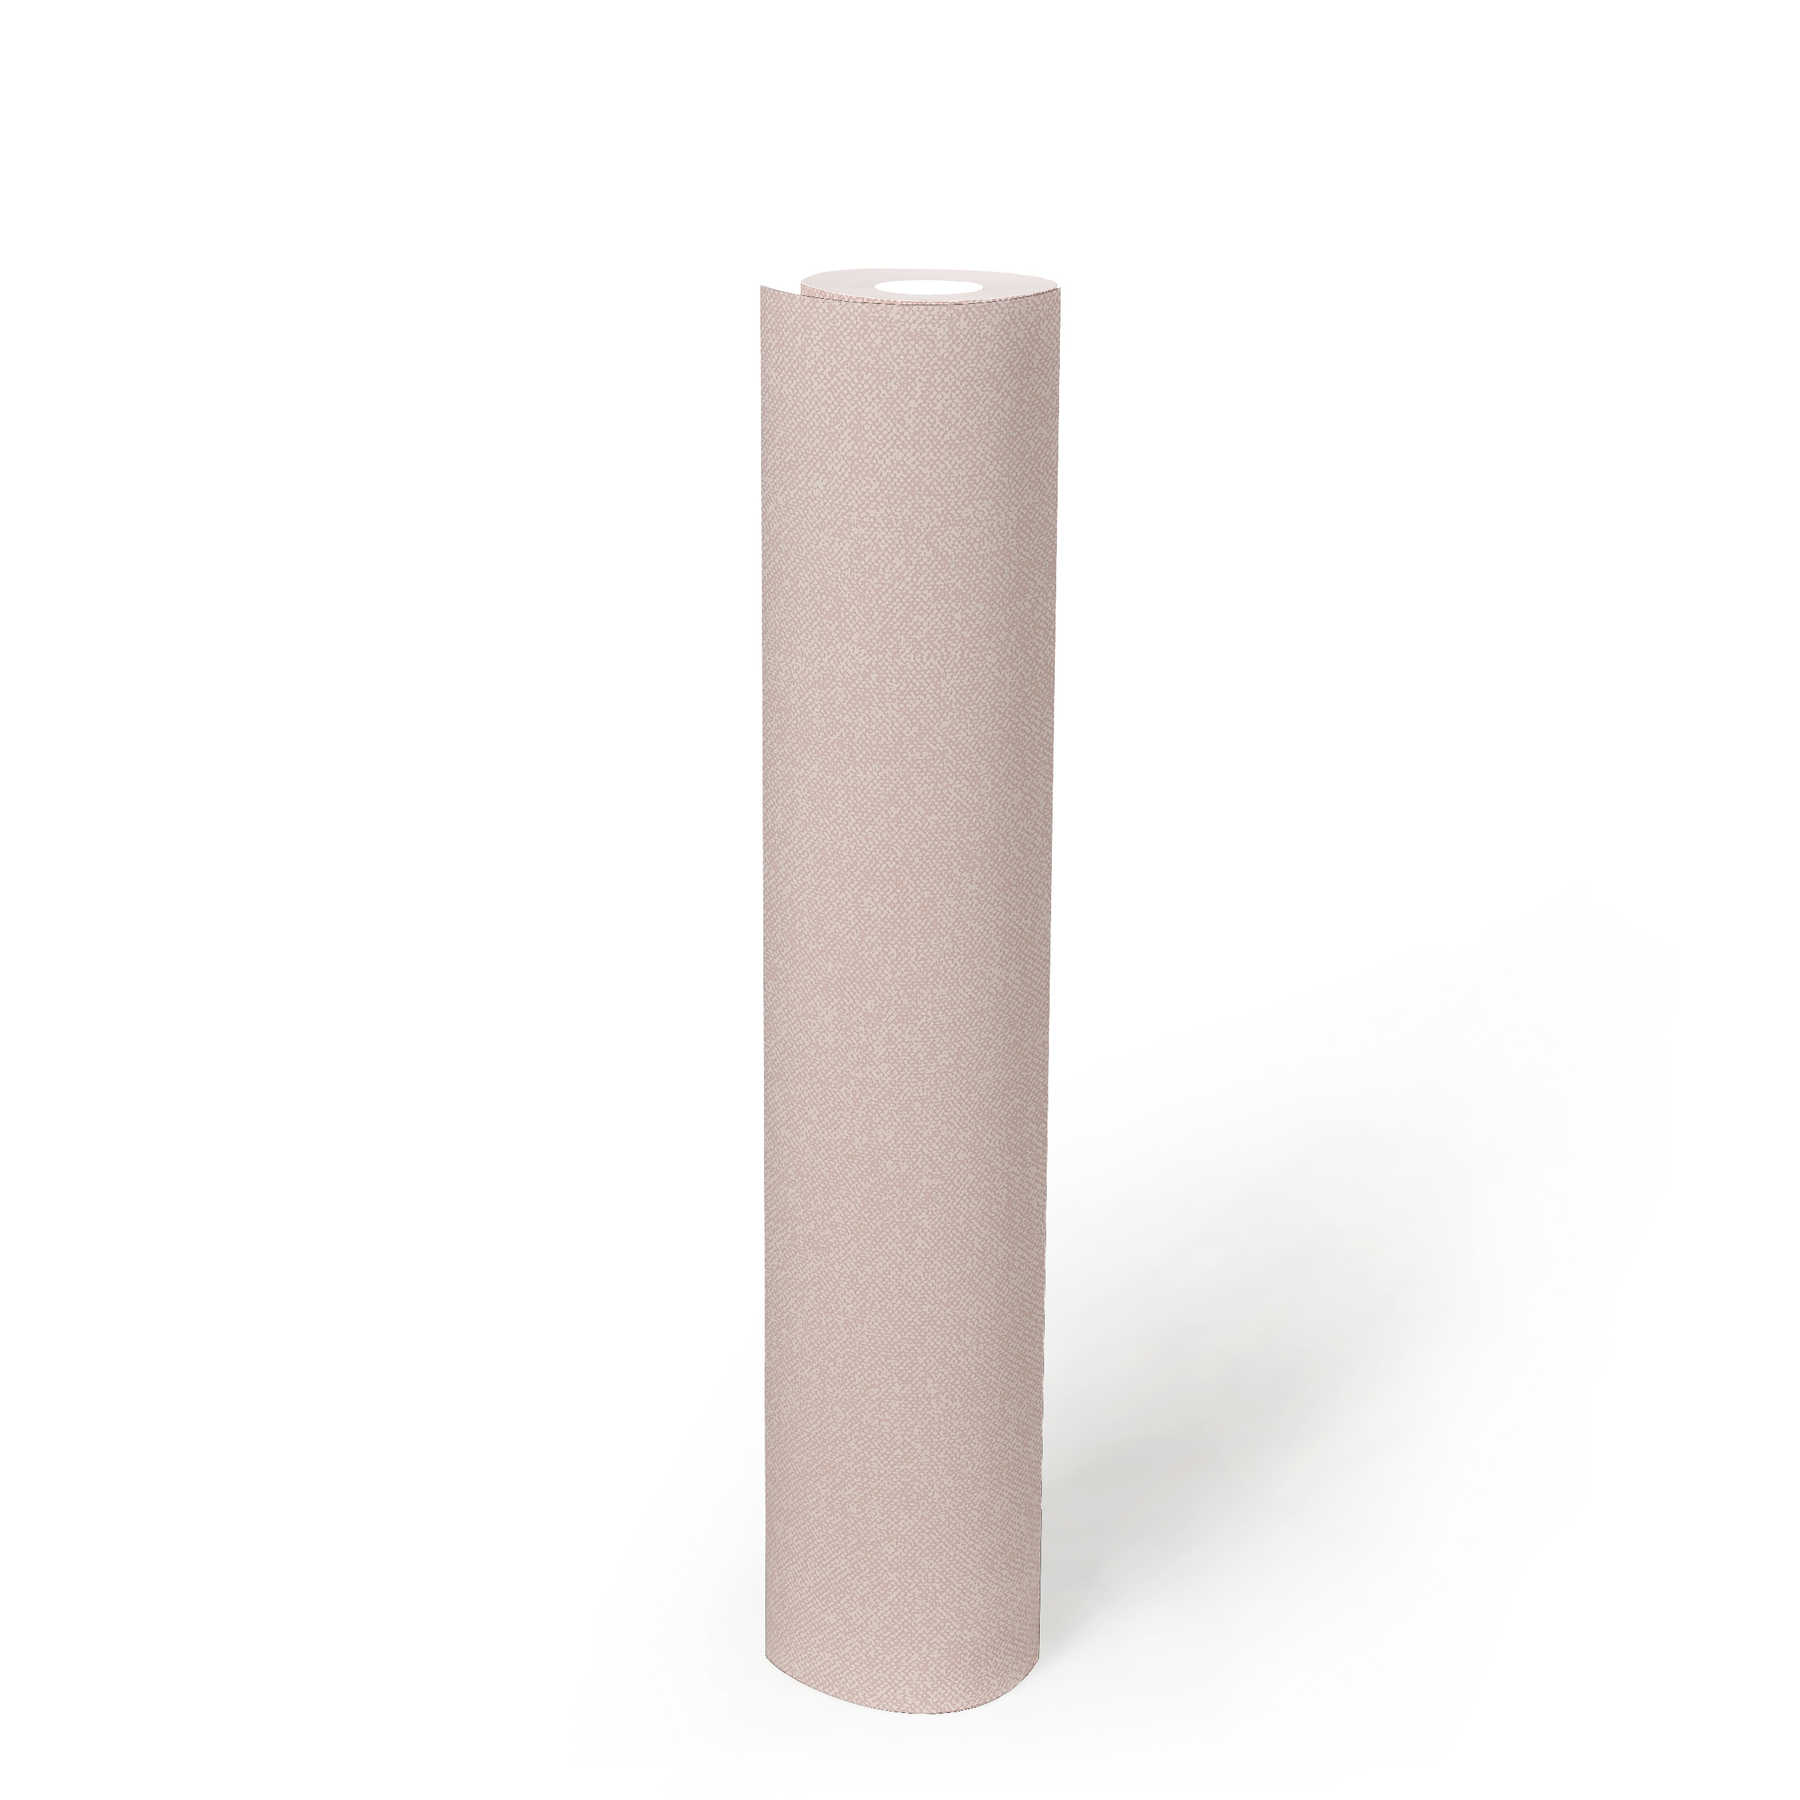             Papier peint à l'aspect textile uni - rose, crème, blanc
        